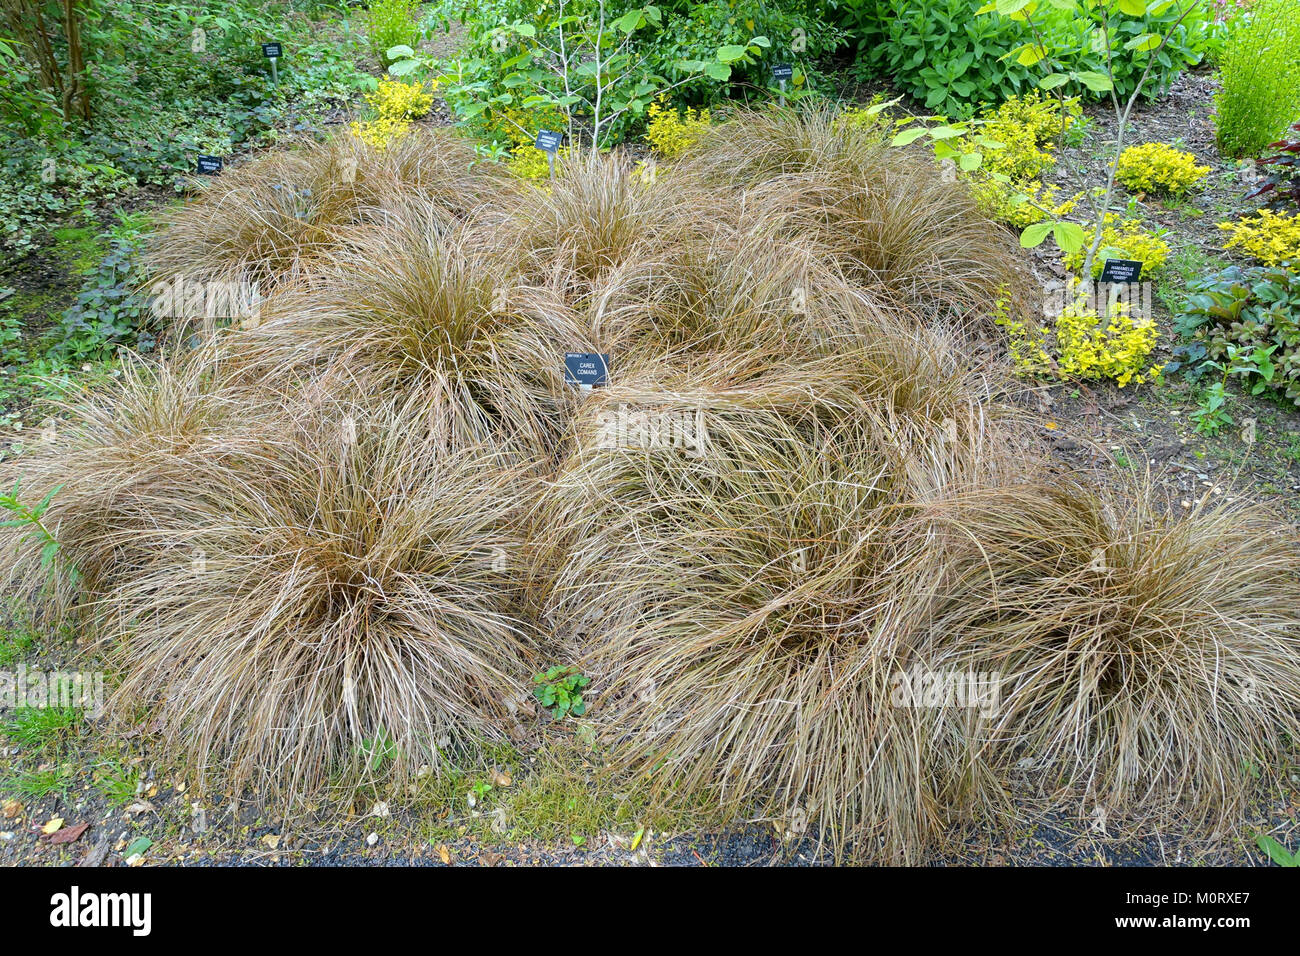 Carex comans - Hillier Gardens - Romsey, Hampshire, England - DSC04461 Stock Photo